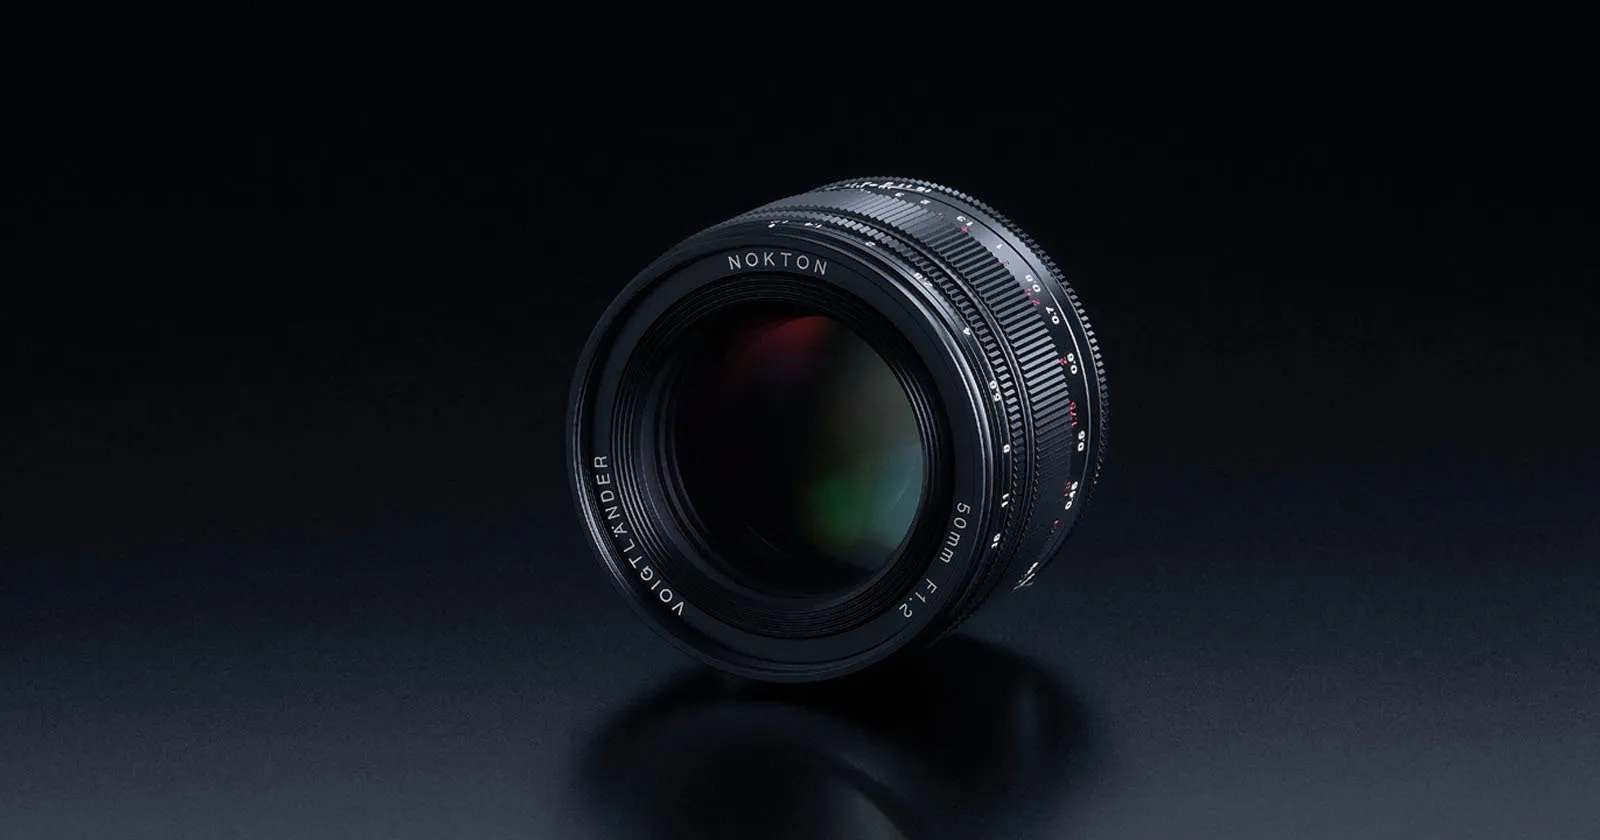 Cosina ra mắt ống kính Voigtlander Nokton 50mm F1.2 dành cho máy ảnh Fujifilm X